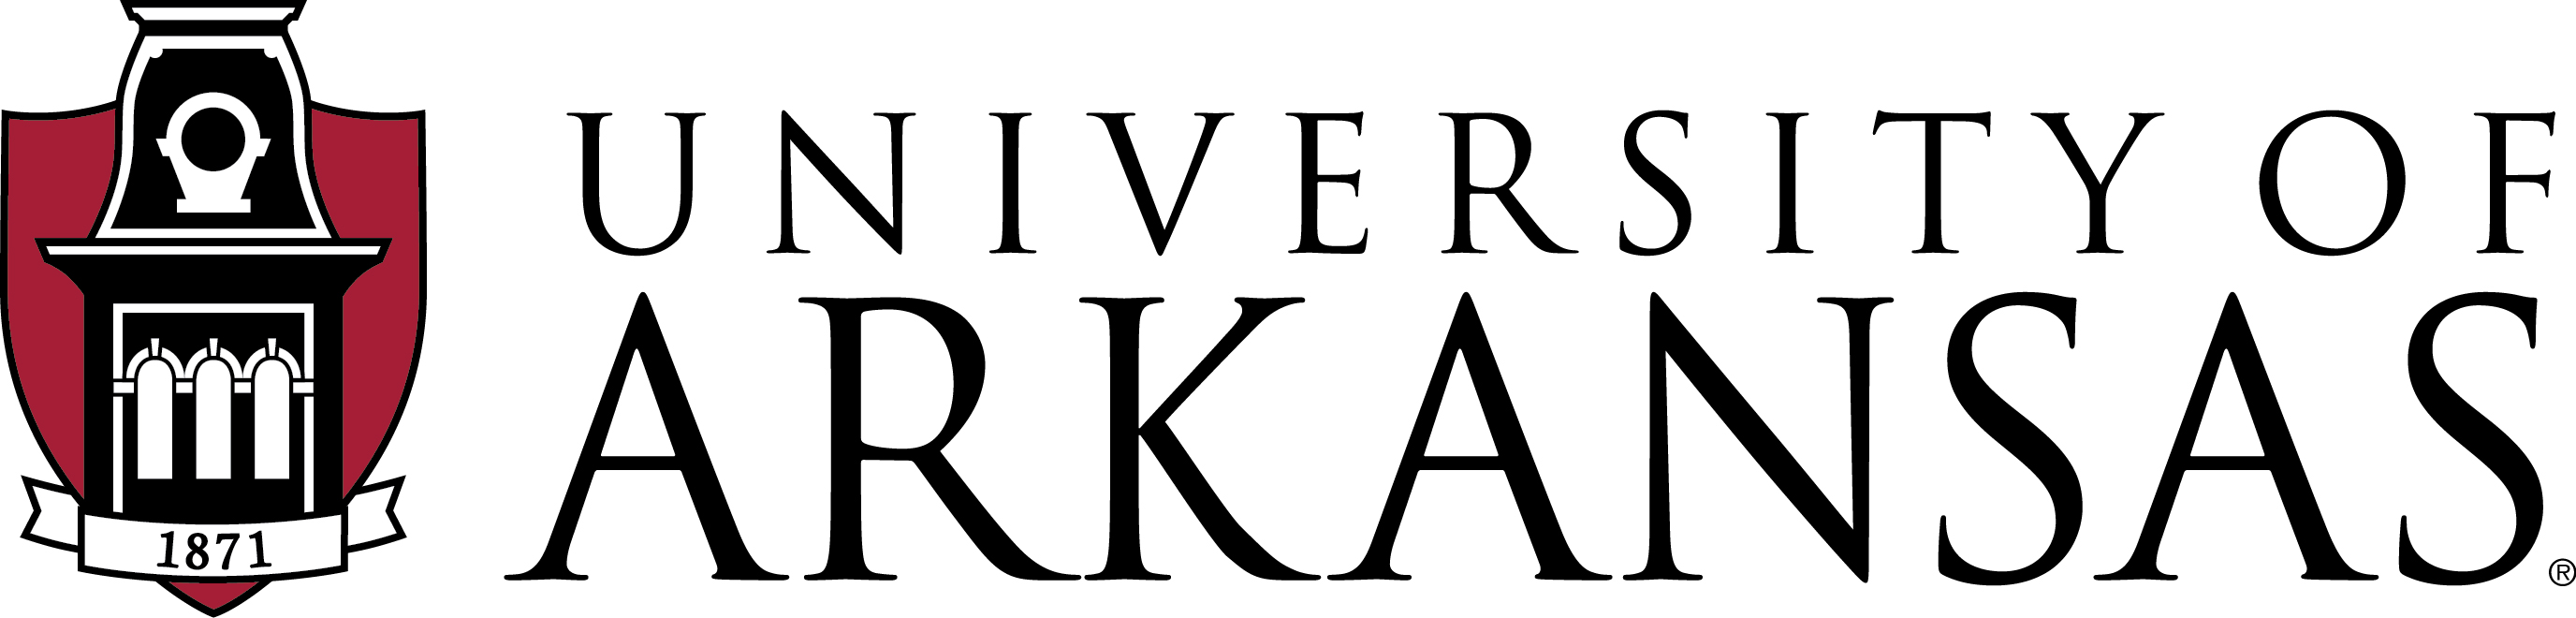 Official logo for the University of Arkansas 